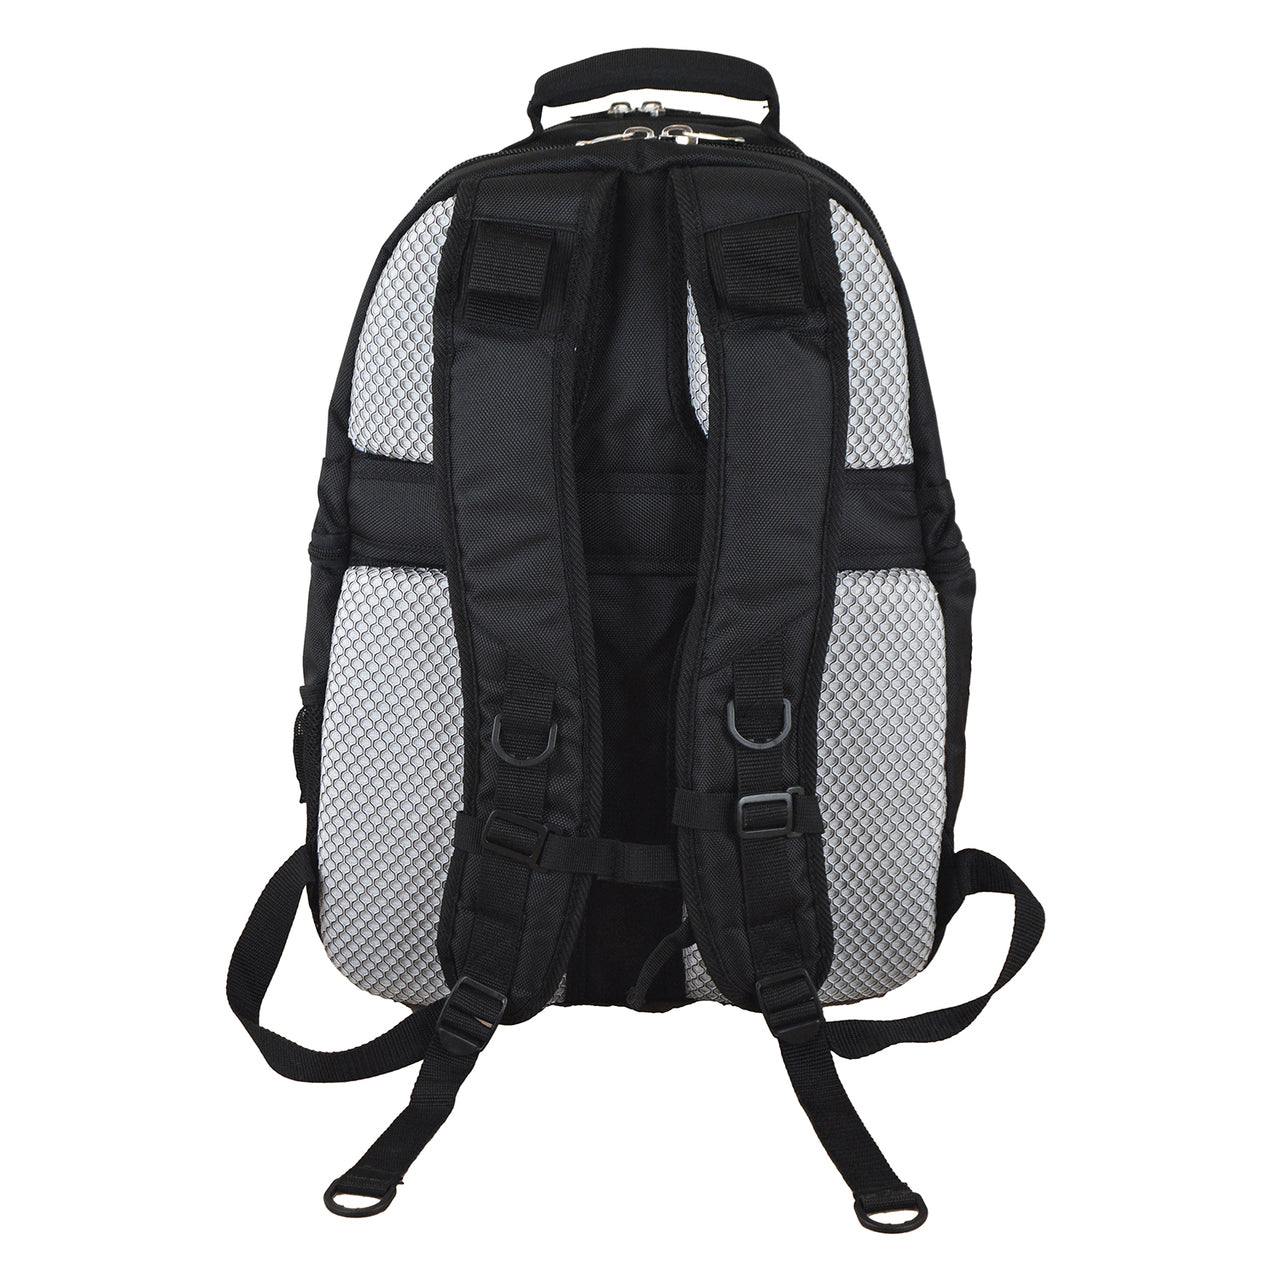 Arkansas Razorbacks Laptop Backpack in Black